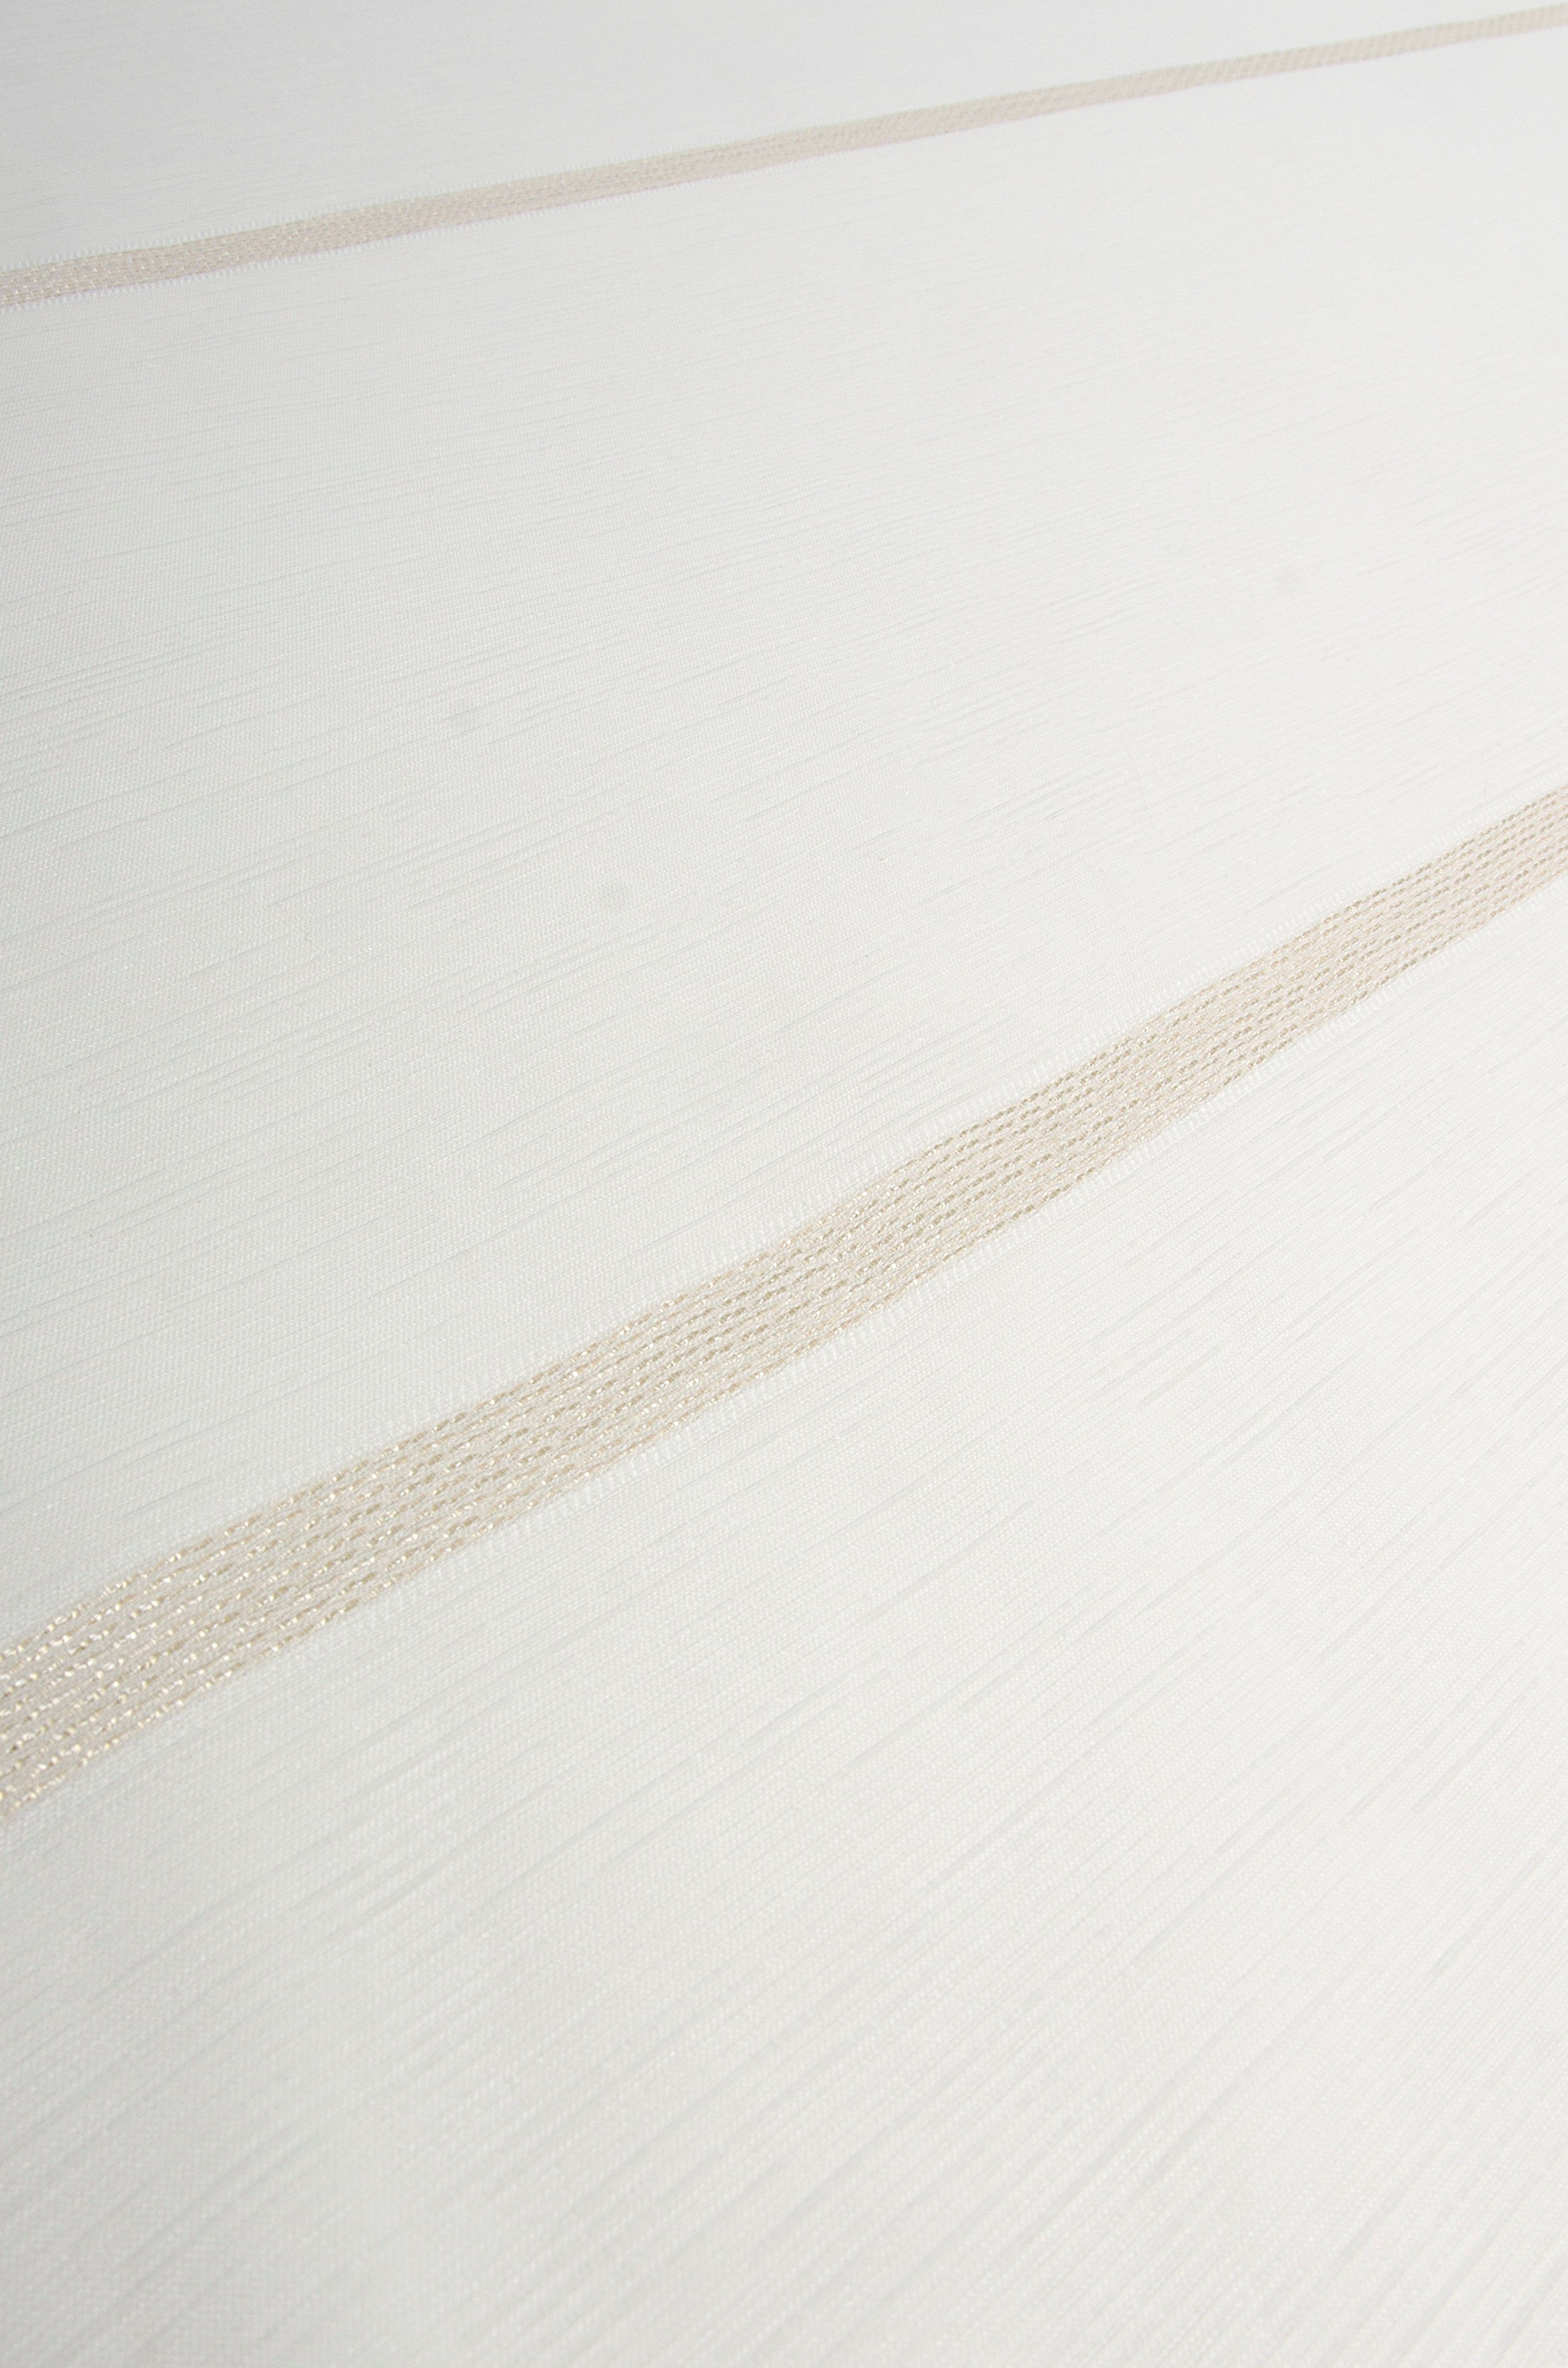 Vorhang Begonia, Neutex for you!, Multifunktionsband (1 St), transparent,  Jacquard, Naturoptik mit feinen Streifen, transparente, leichte Stoffe sind  komplett lichtdurchlässig